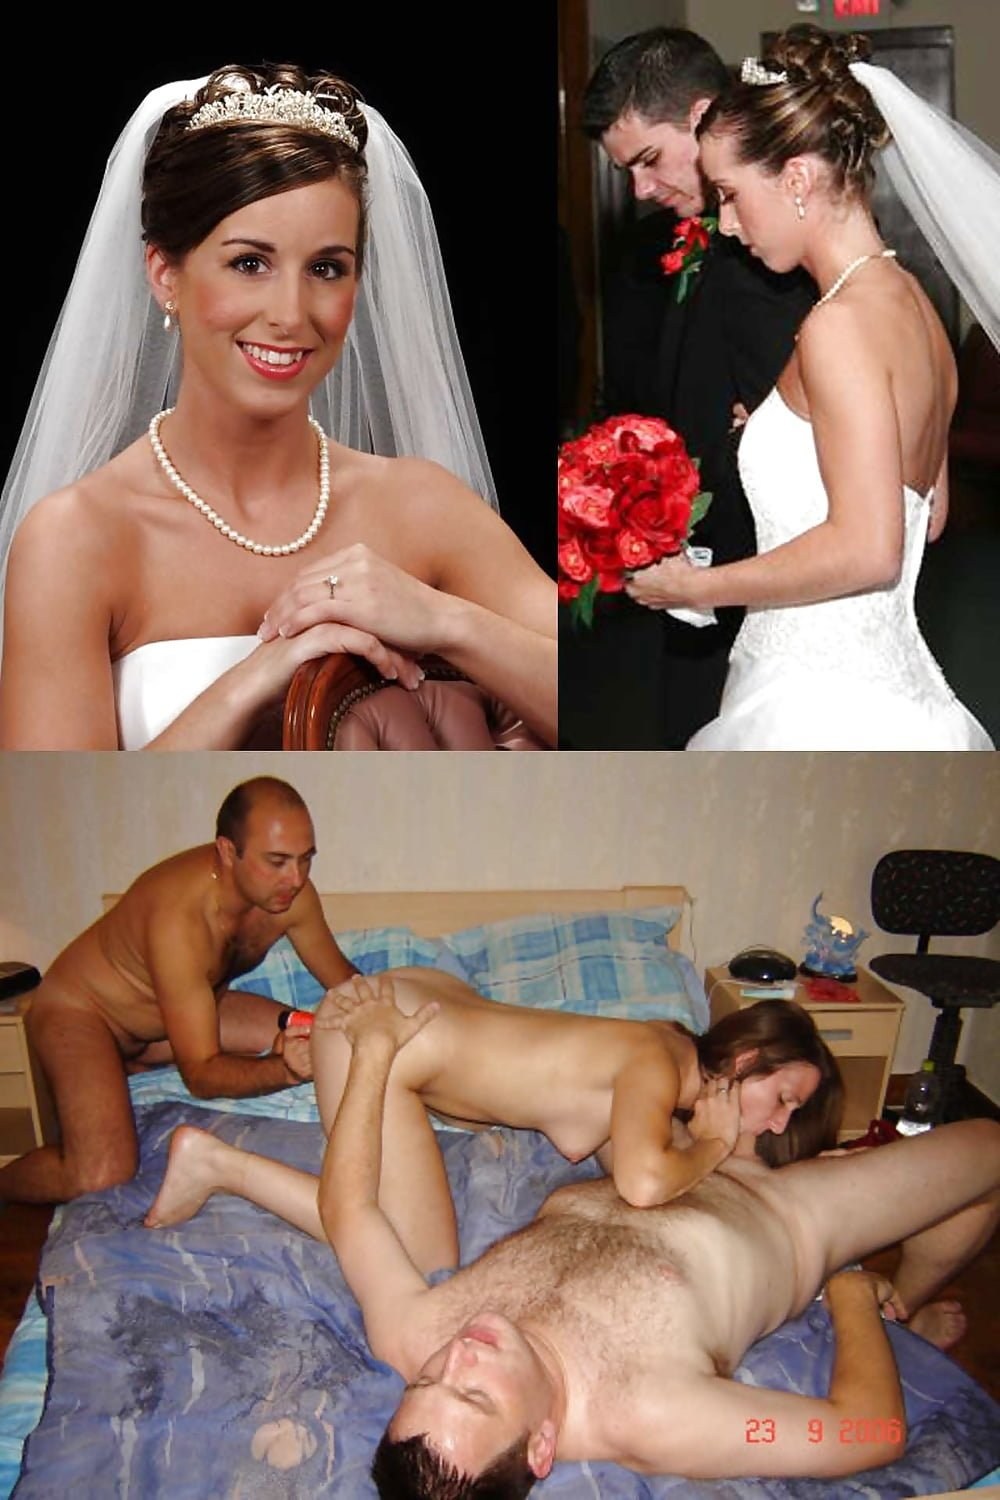 Porn Wedding Band (76 photos)